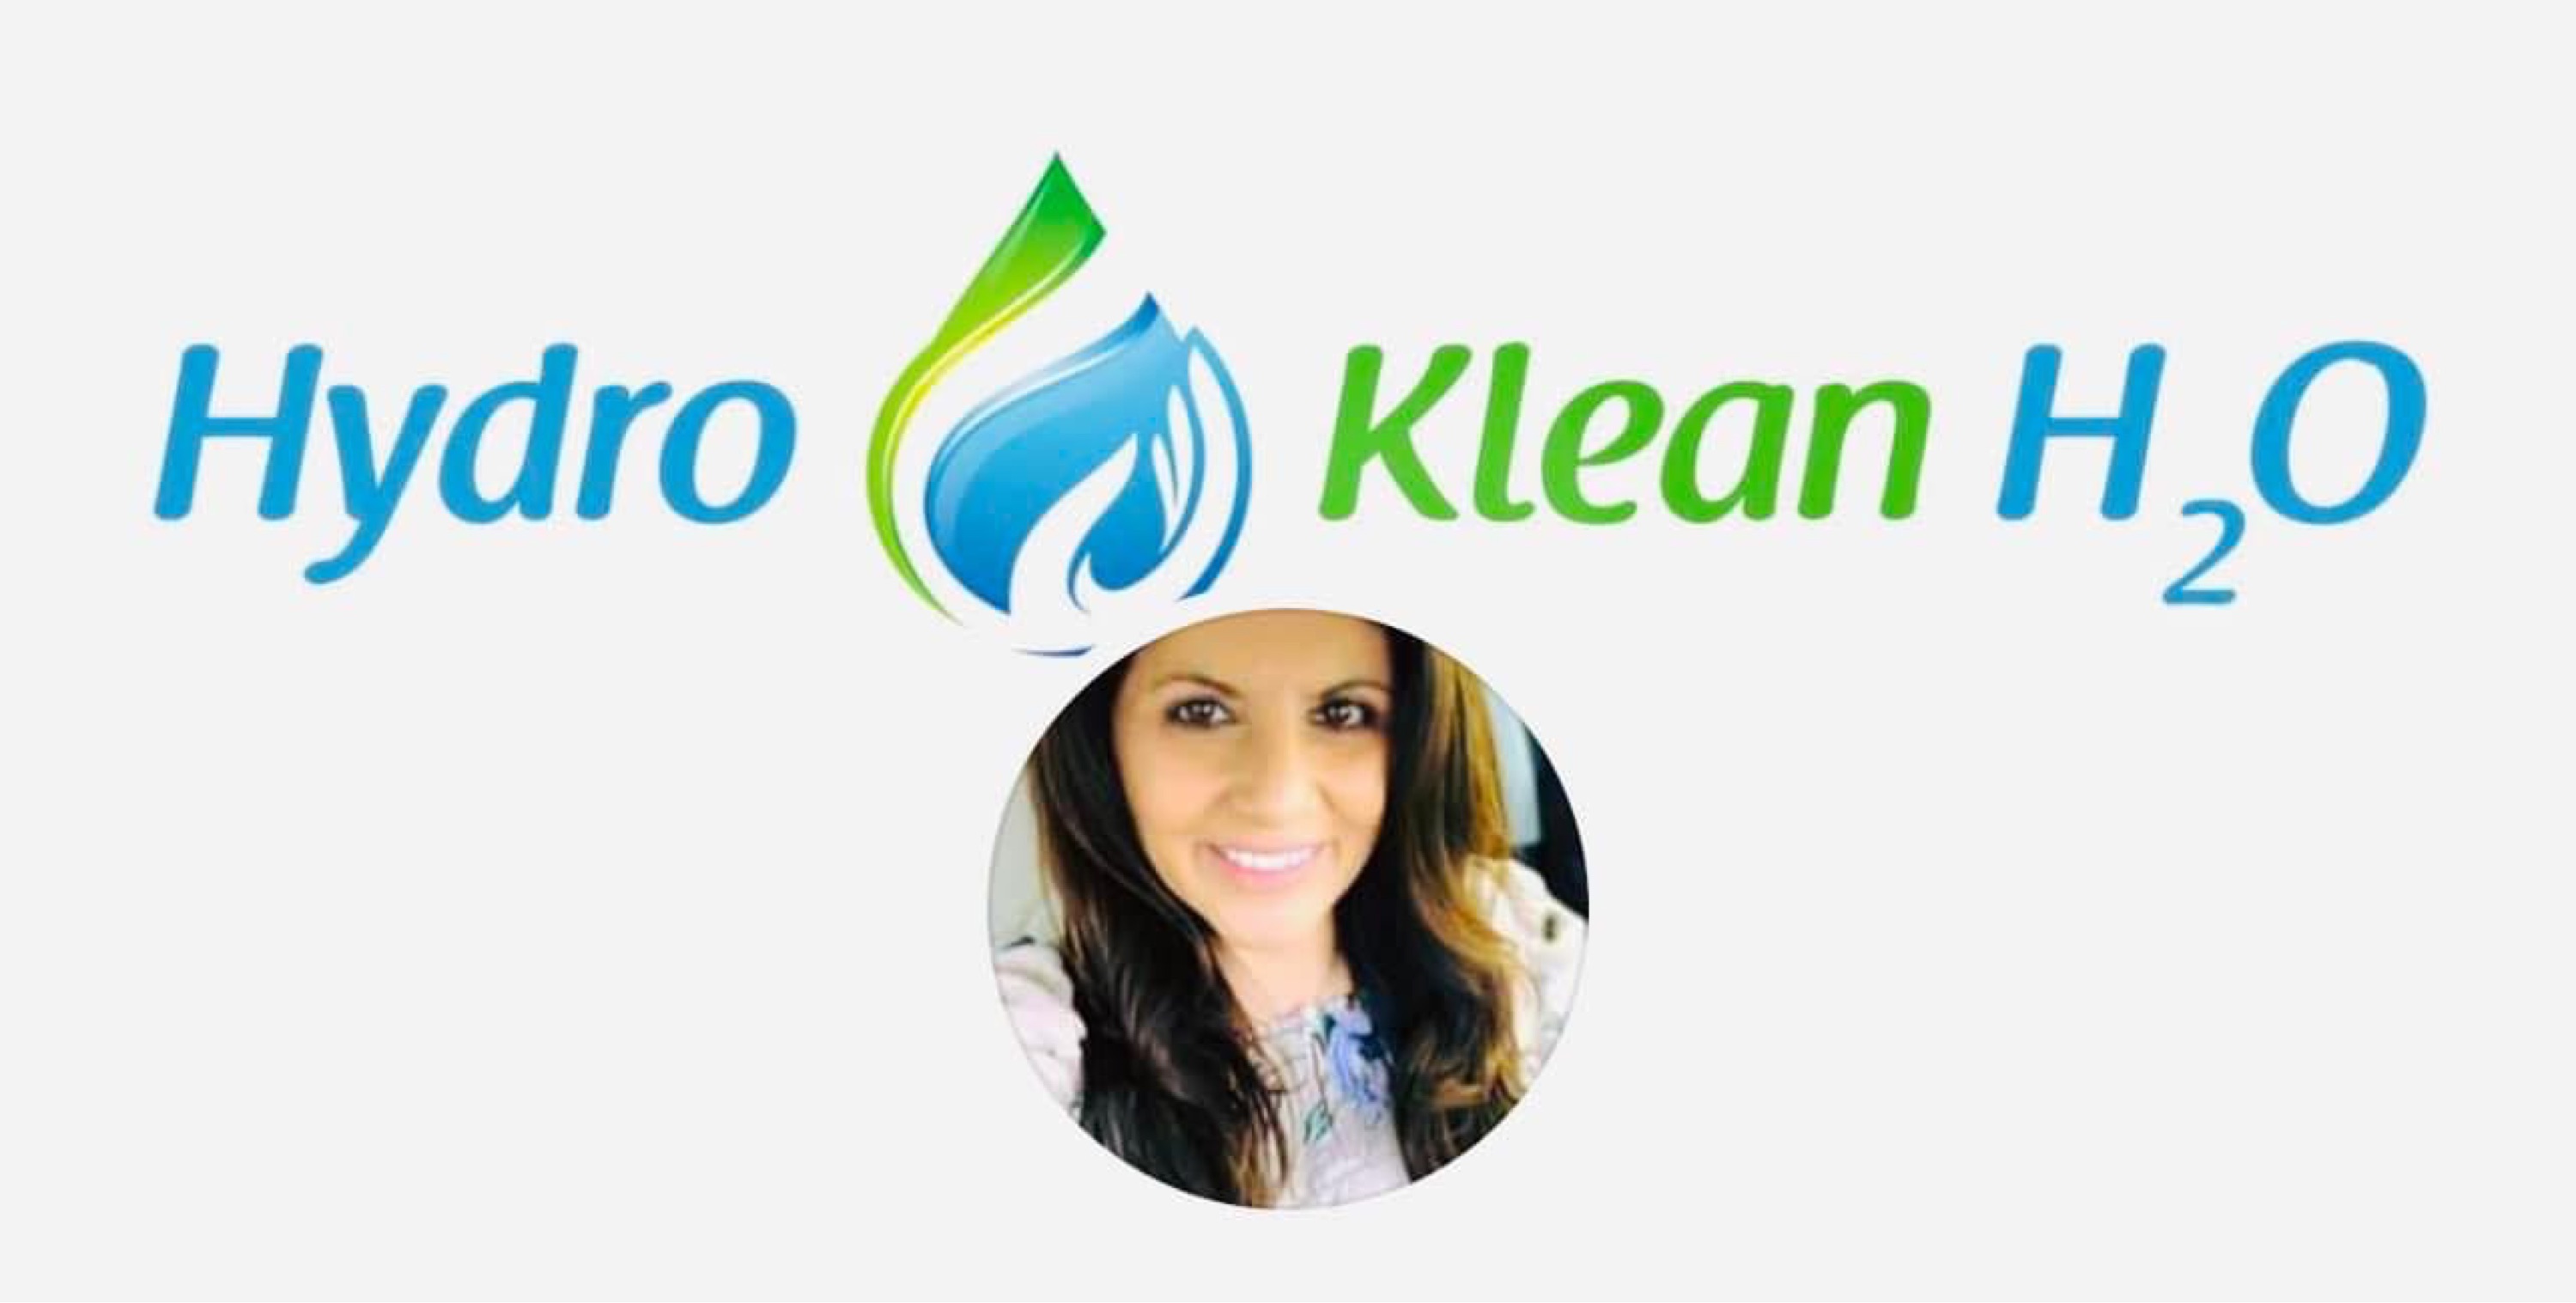 Hydro Klean H2O Logo